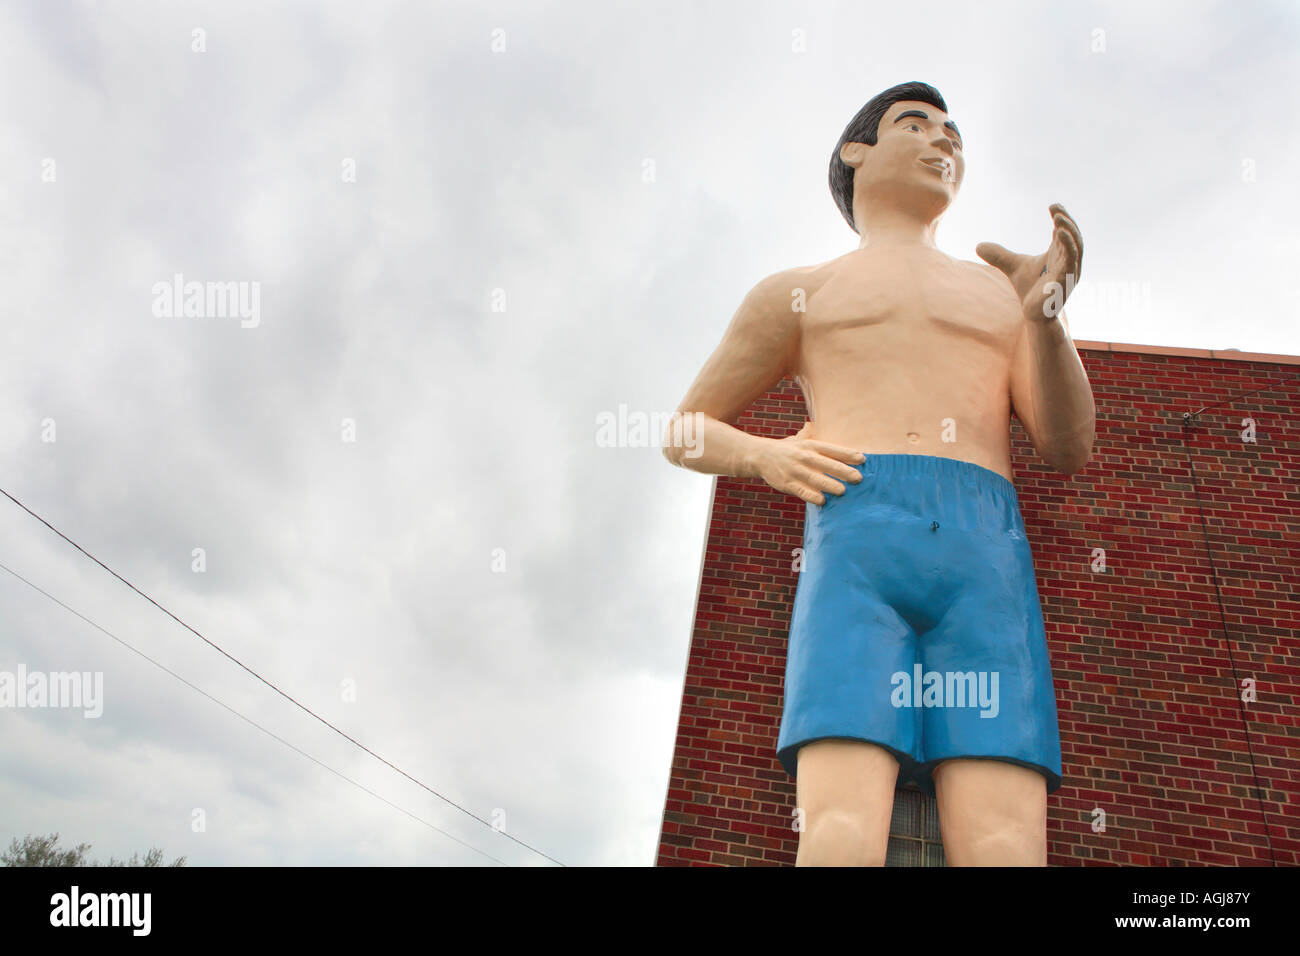 gigantische Statue eines Mannes im Schwimmen Shorts-Route 66-illinois Stockfoto